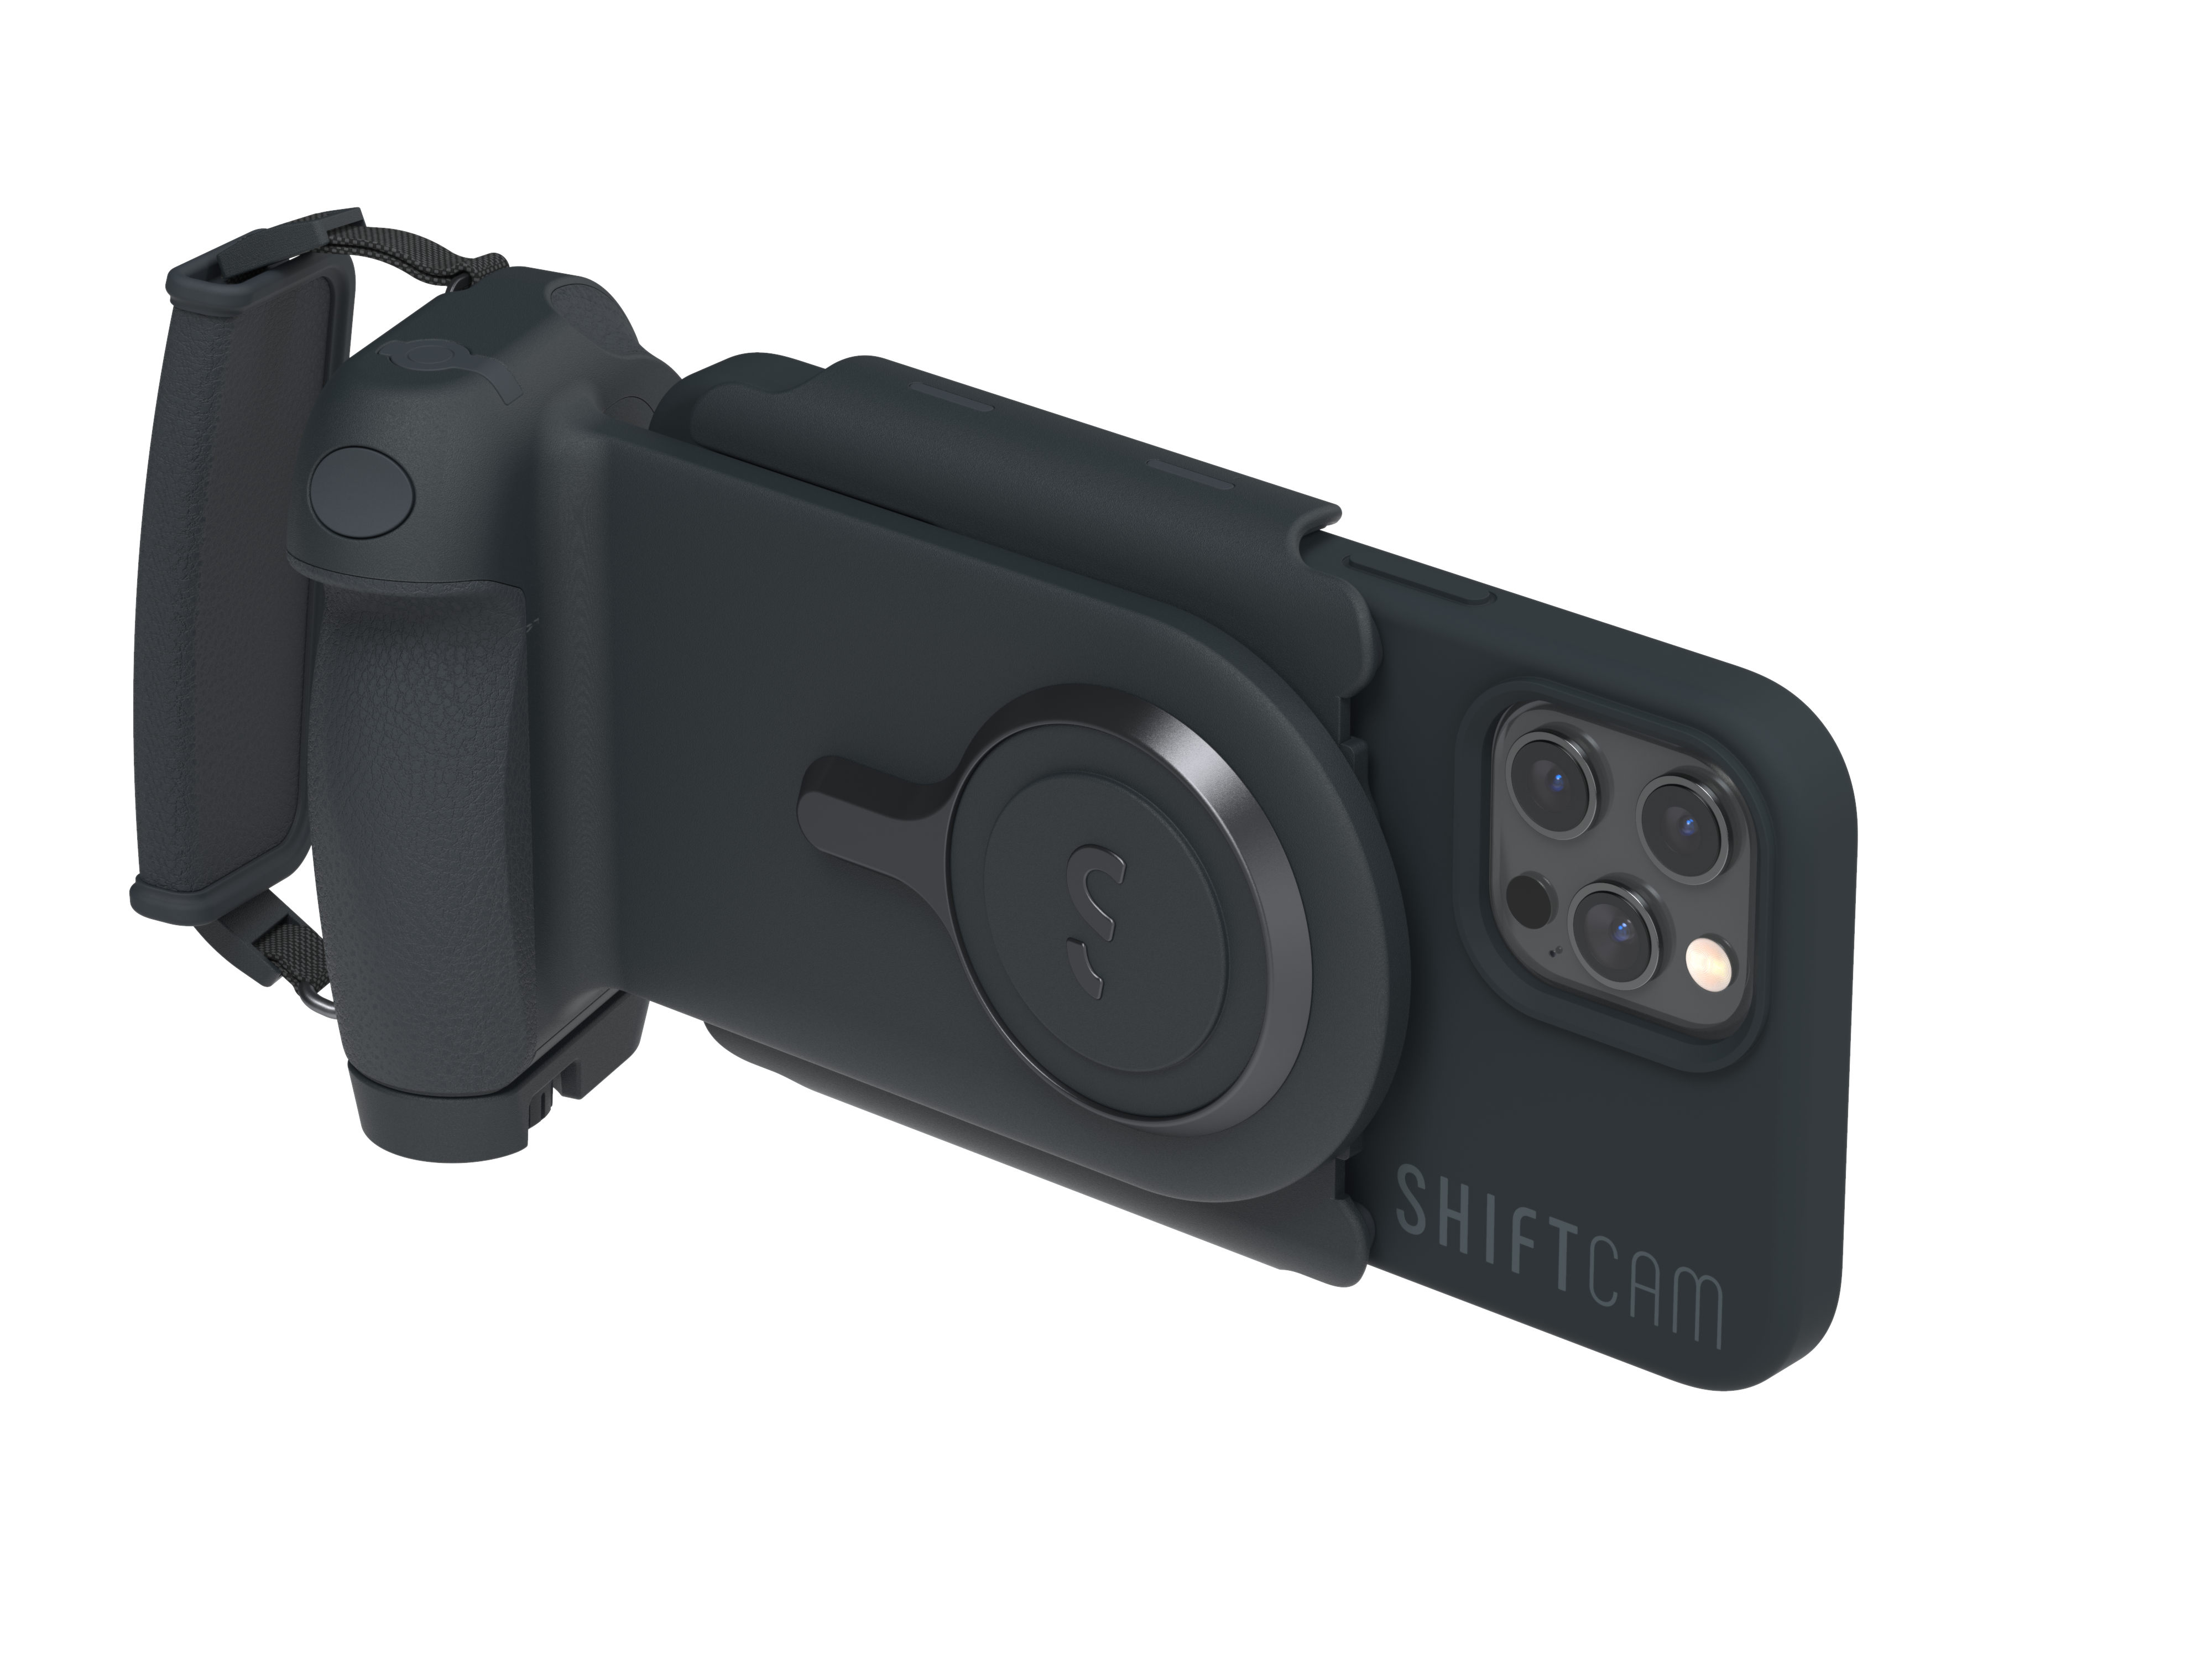 passend Charcoal, alle Charcoal, Smartphones Kameragriff, ProGrip Starter für Kit SHIFTCAM - Smartphone